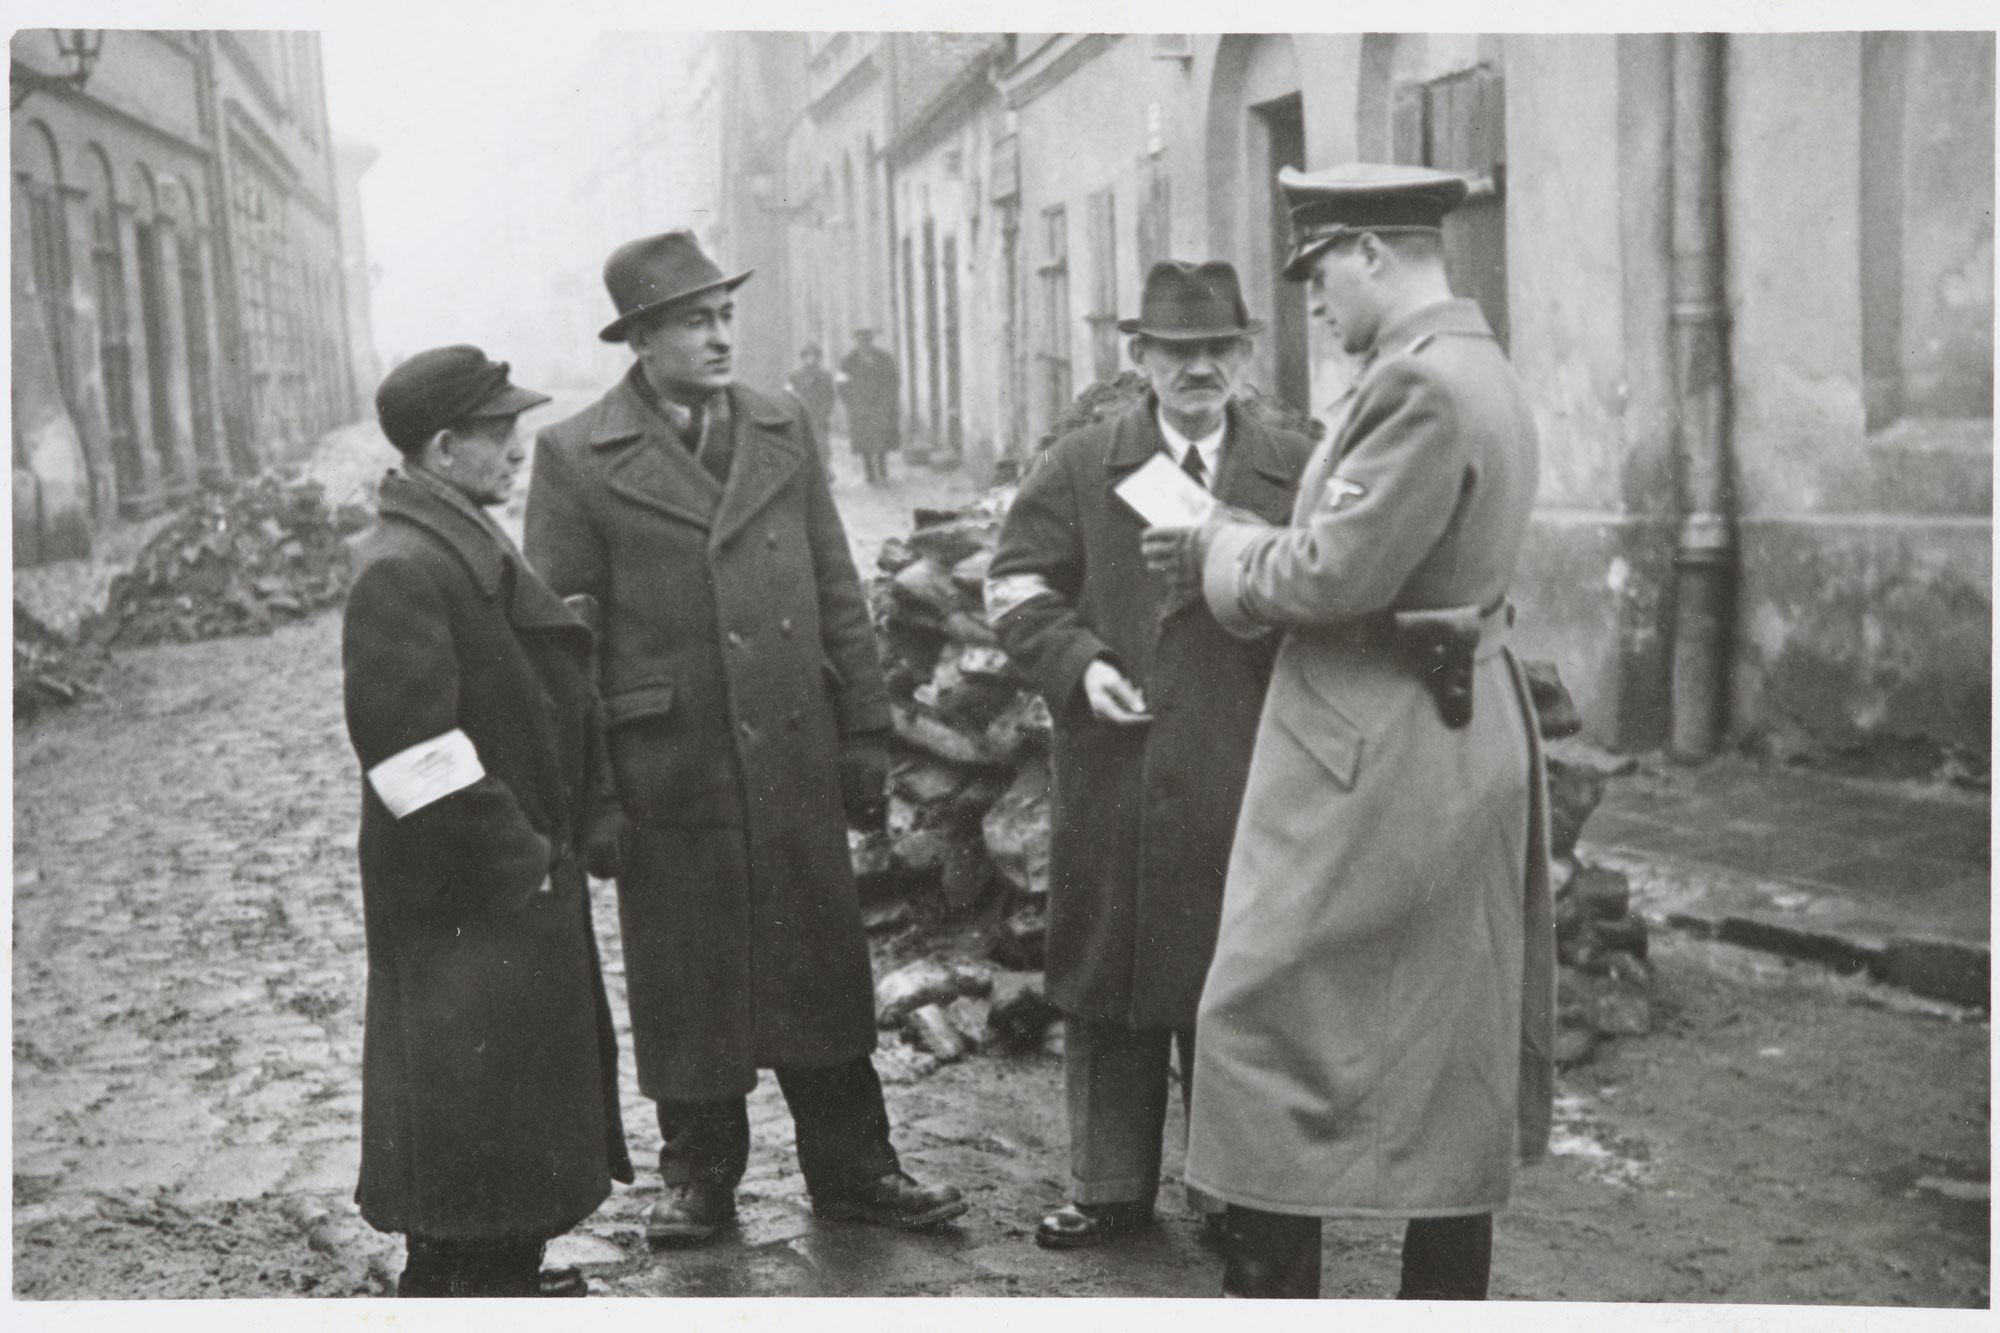 شرطي ألماني يتحقق من أوراق هوية اليهود في حي كراكوف في بولندا. حوالي عام 1941.